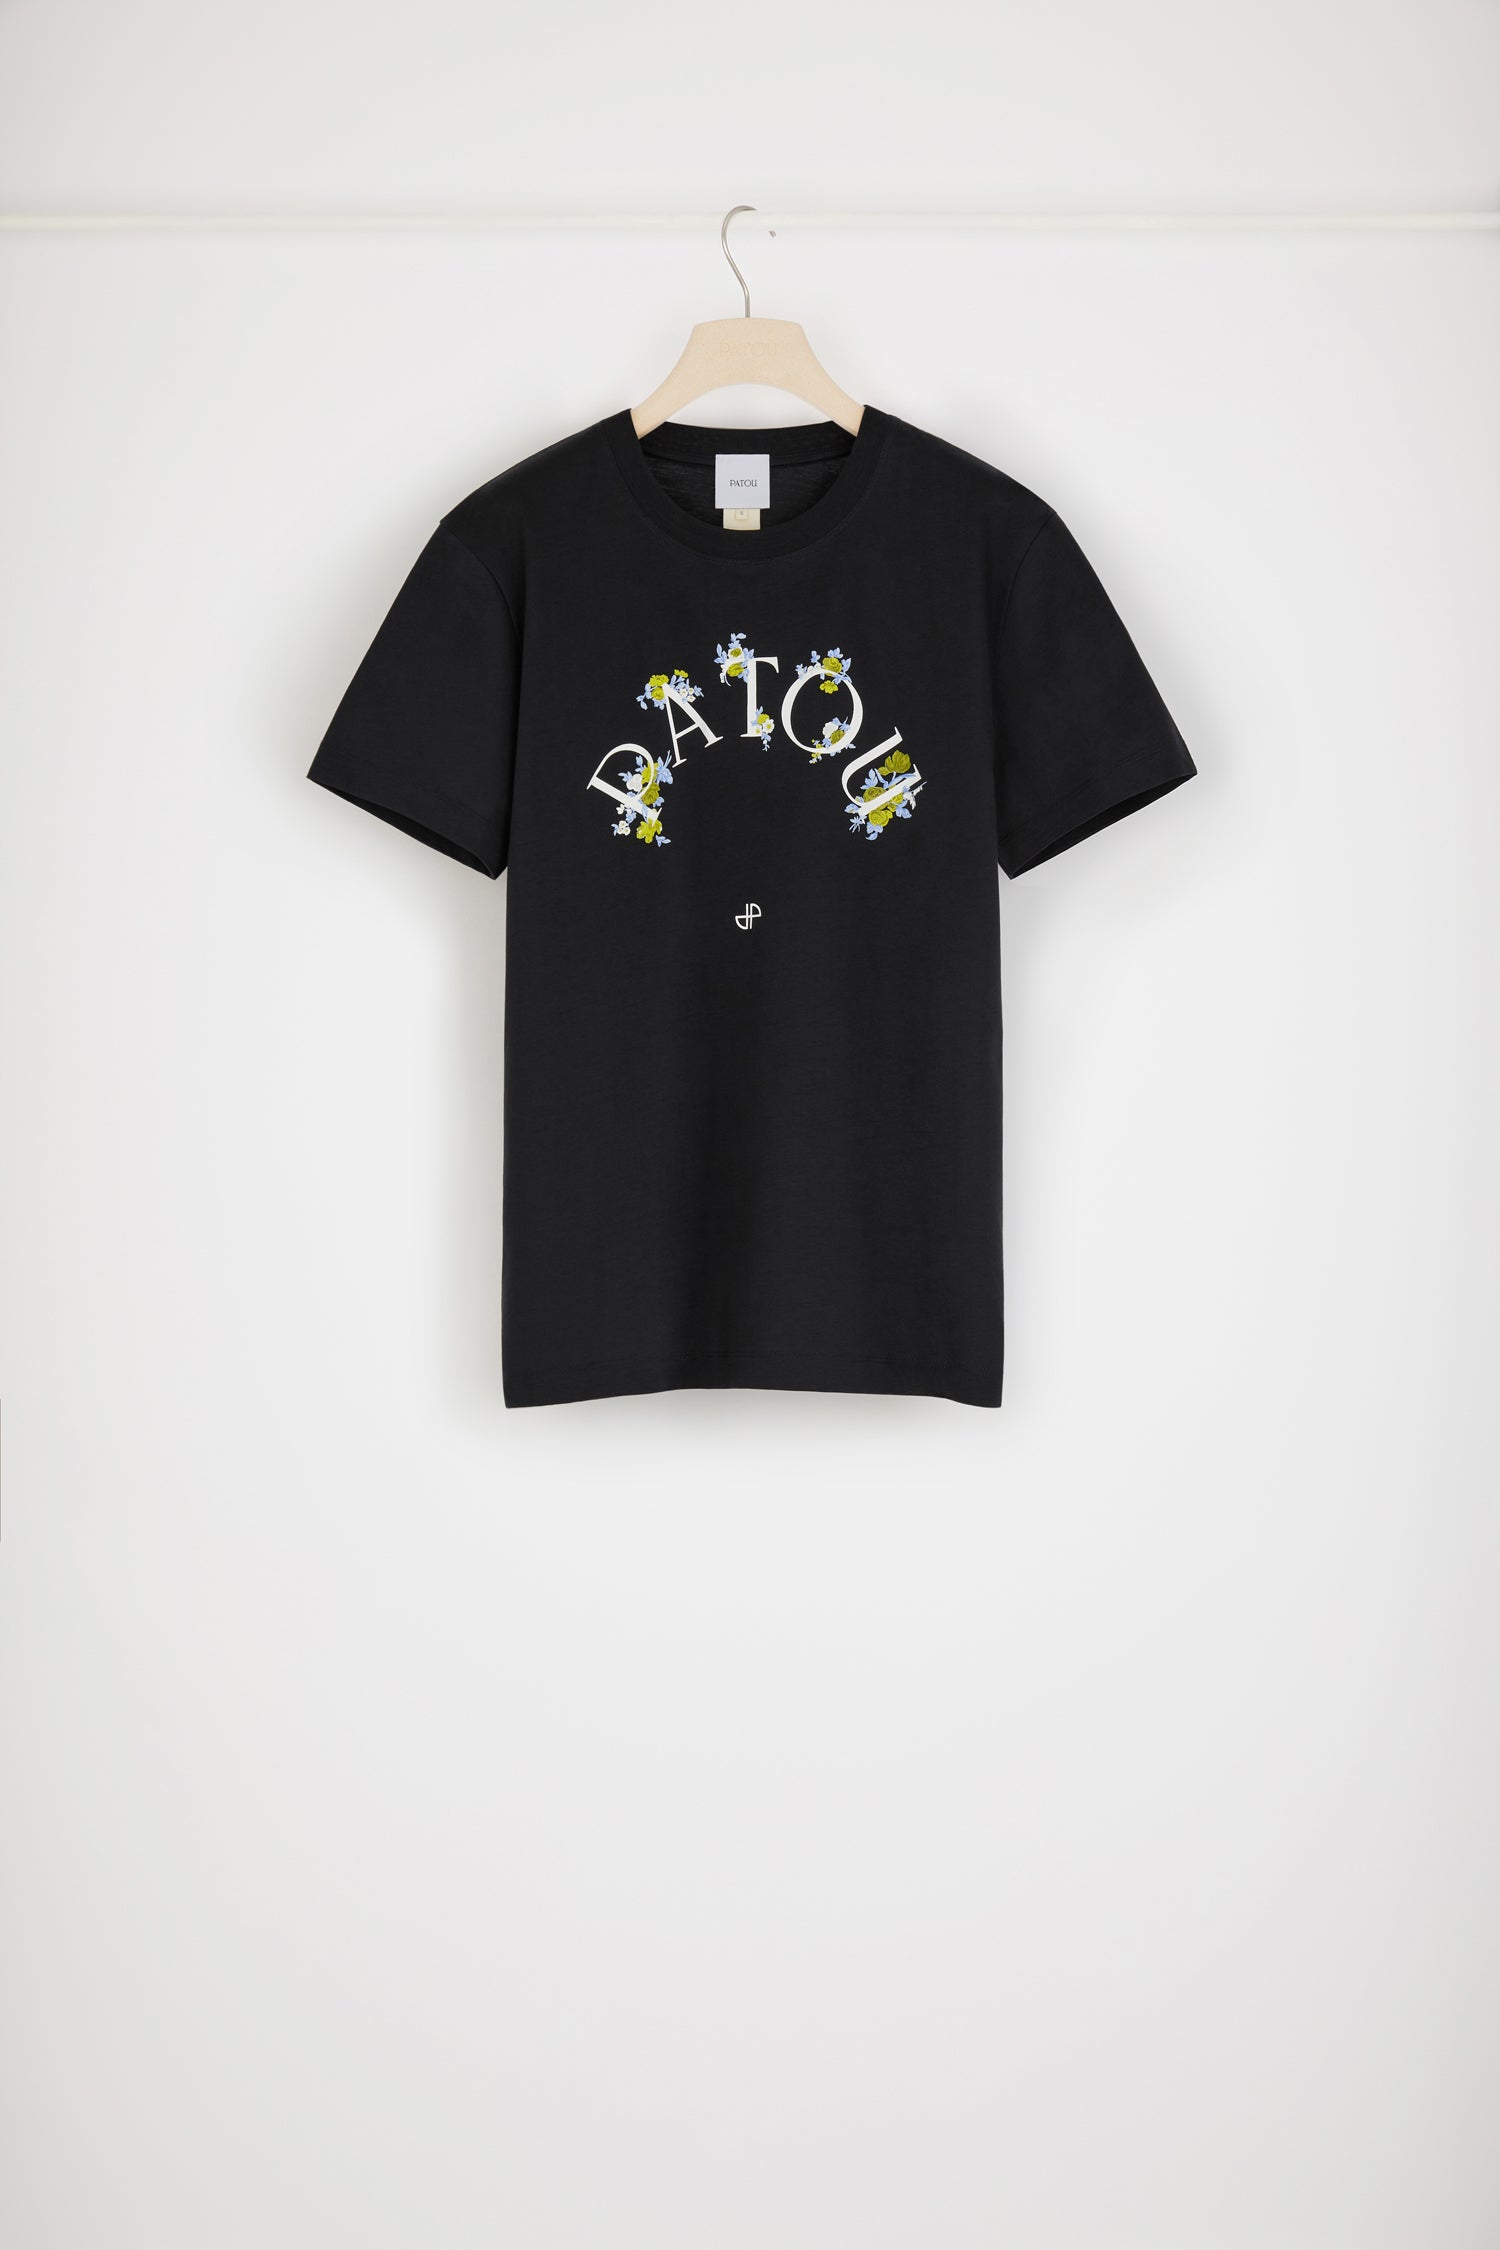 オーガニックコットン フローラル パトゥ Tシャツ - Black - XS